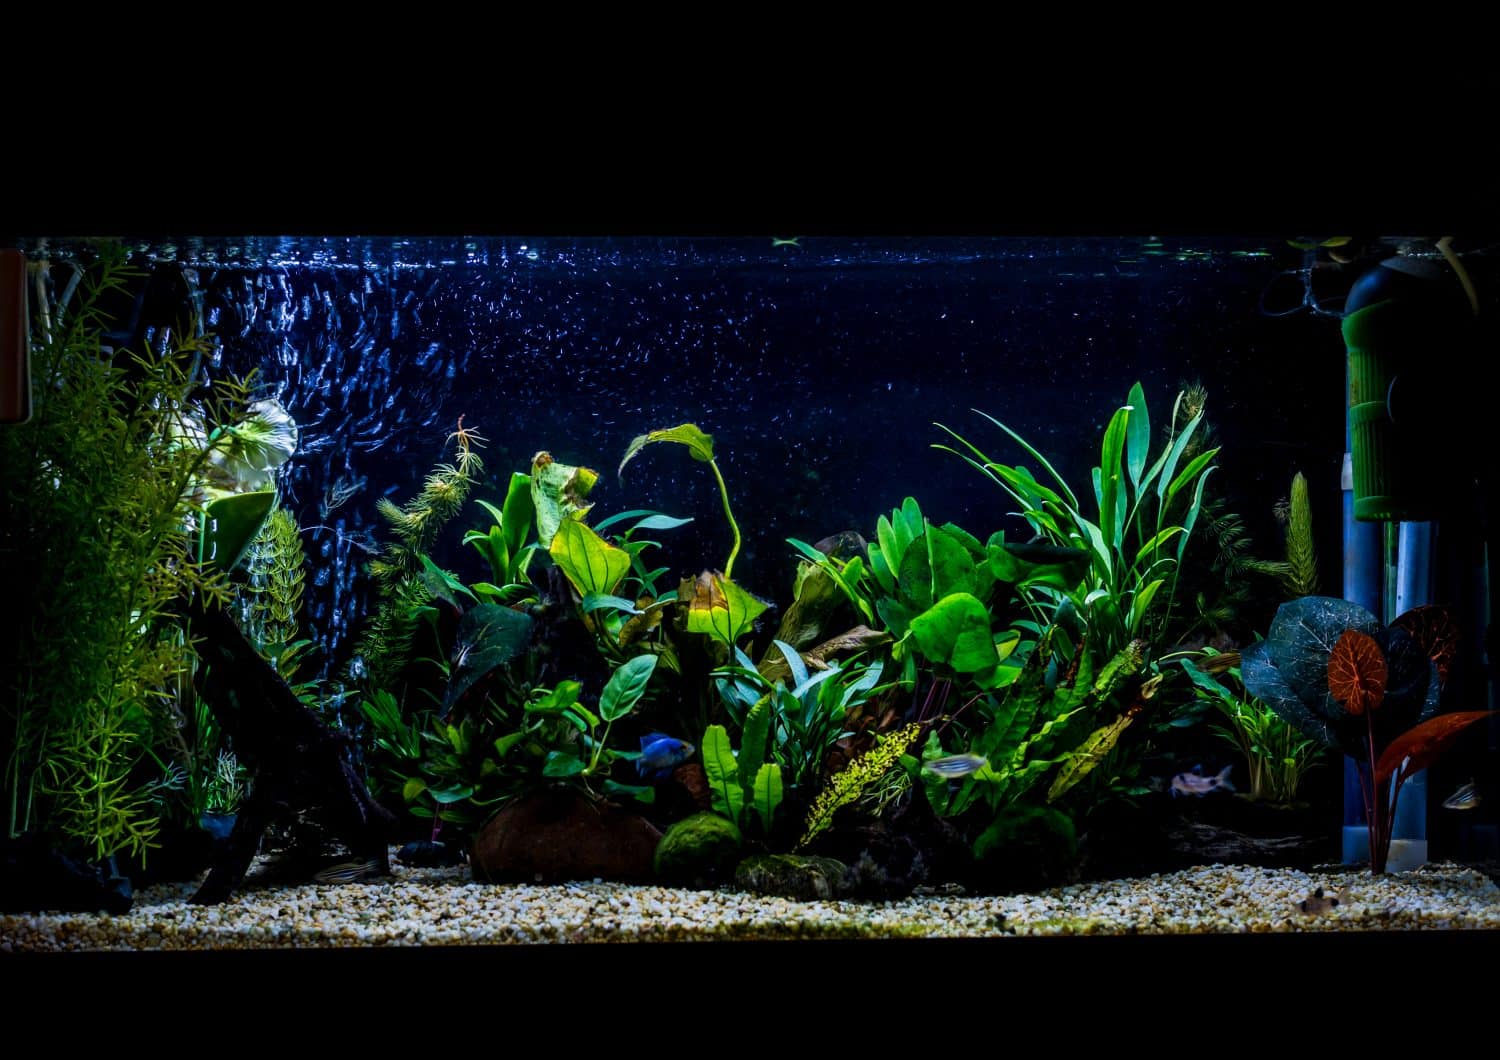 A shot of a 40 gallon, 3ft long, planted tropical fish aquarium.